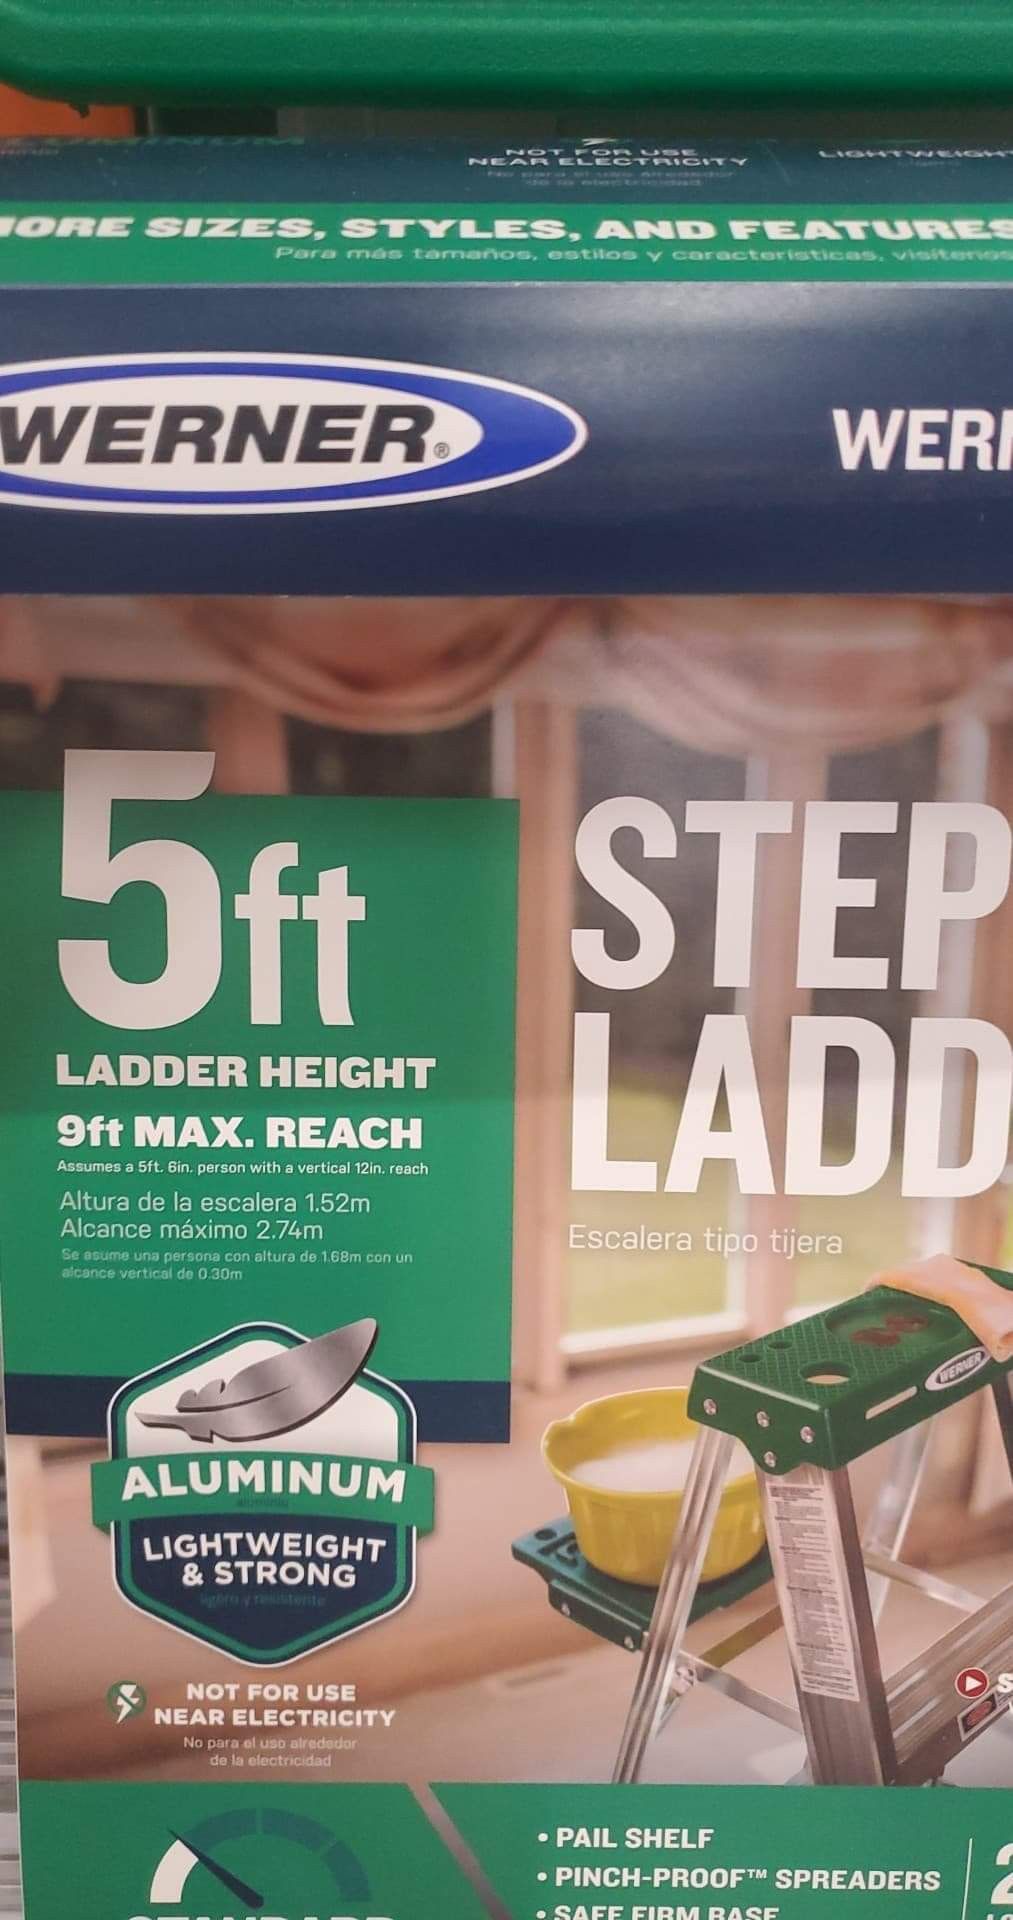 5 feet Ladder